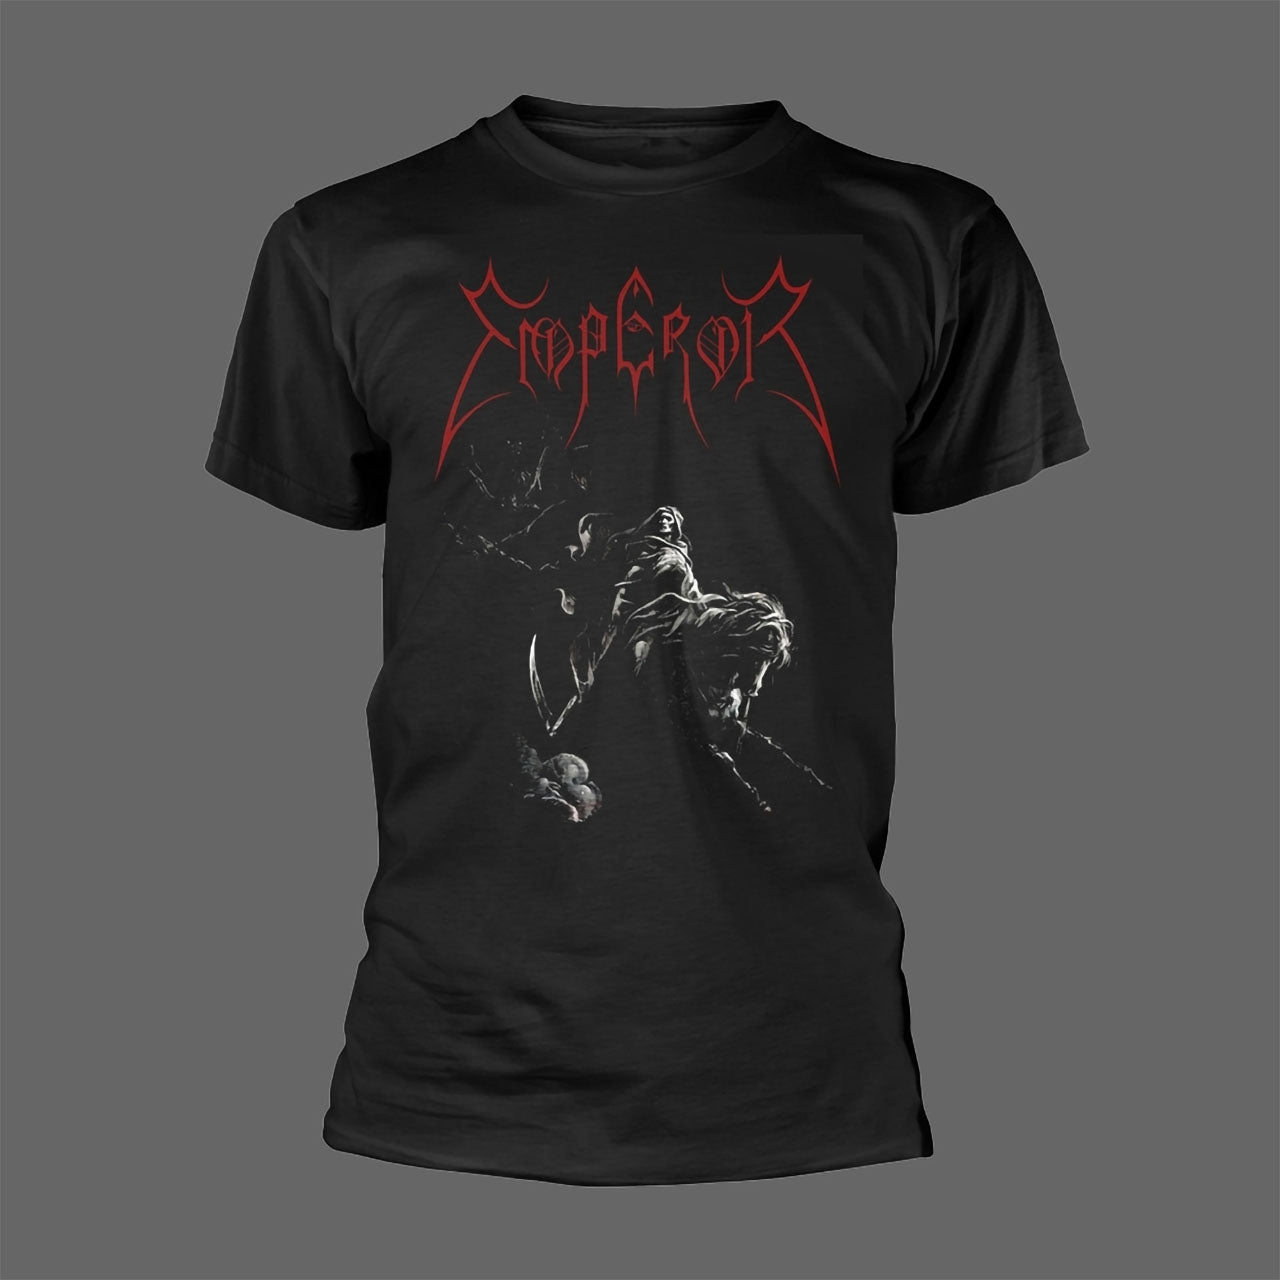 Emperor - Emperor (Rider) (T-Shirt)